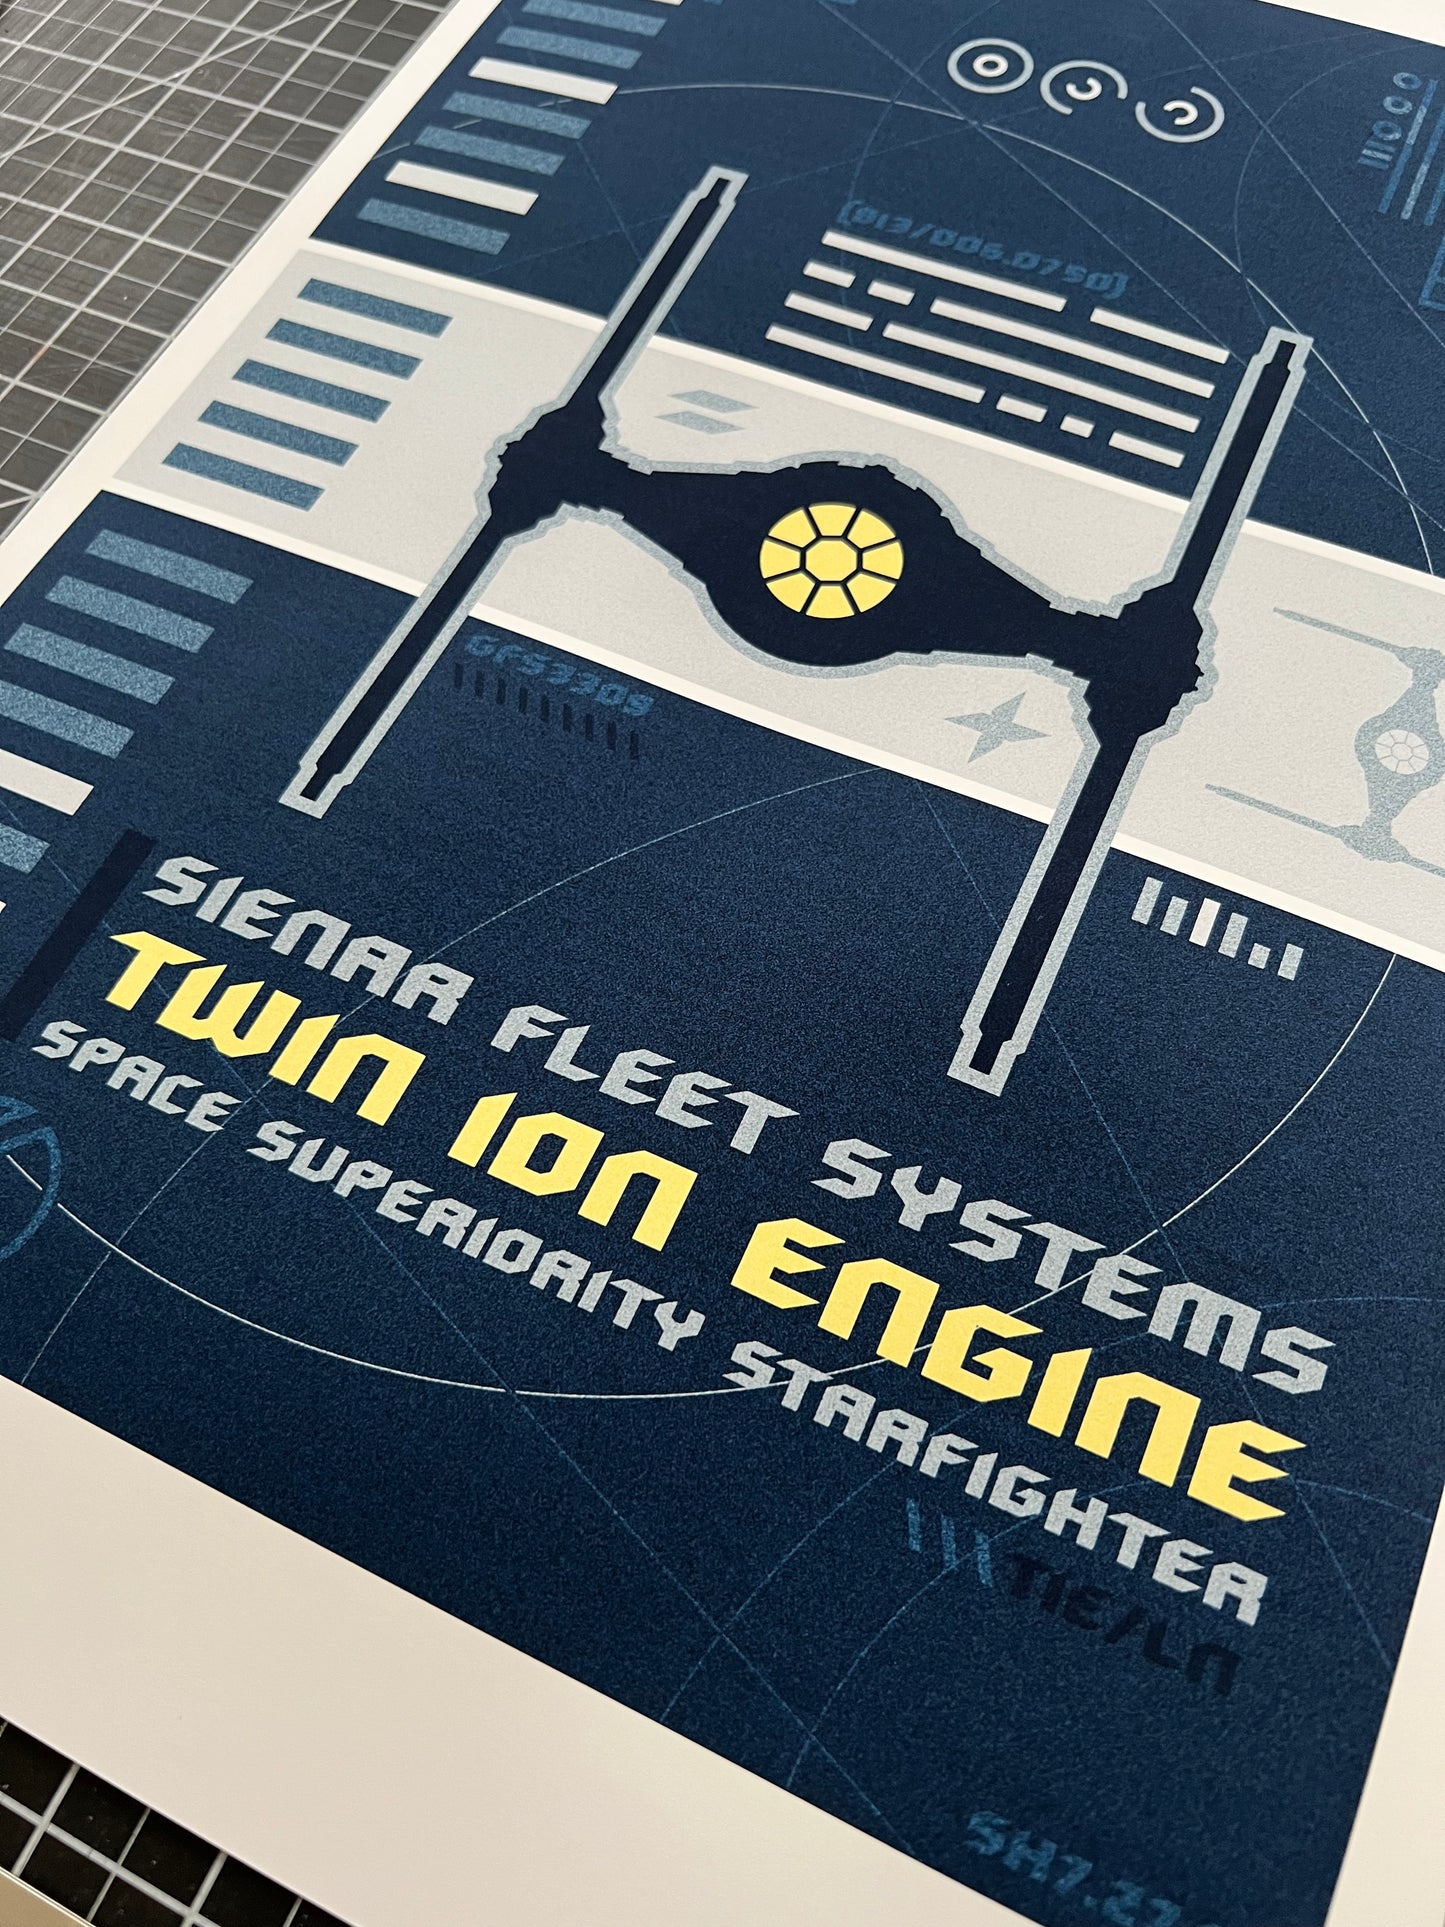 Twin Ion Engine - 12x16" Print